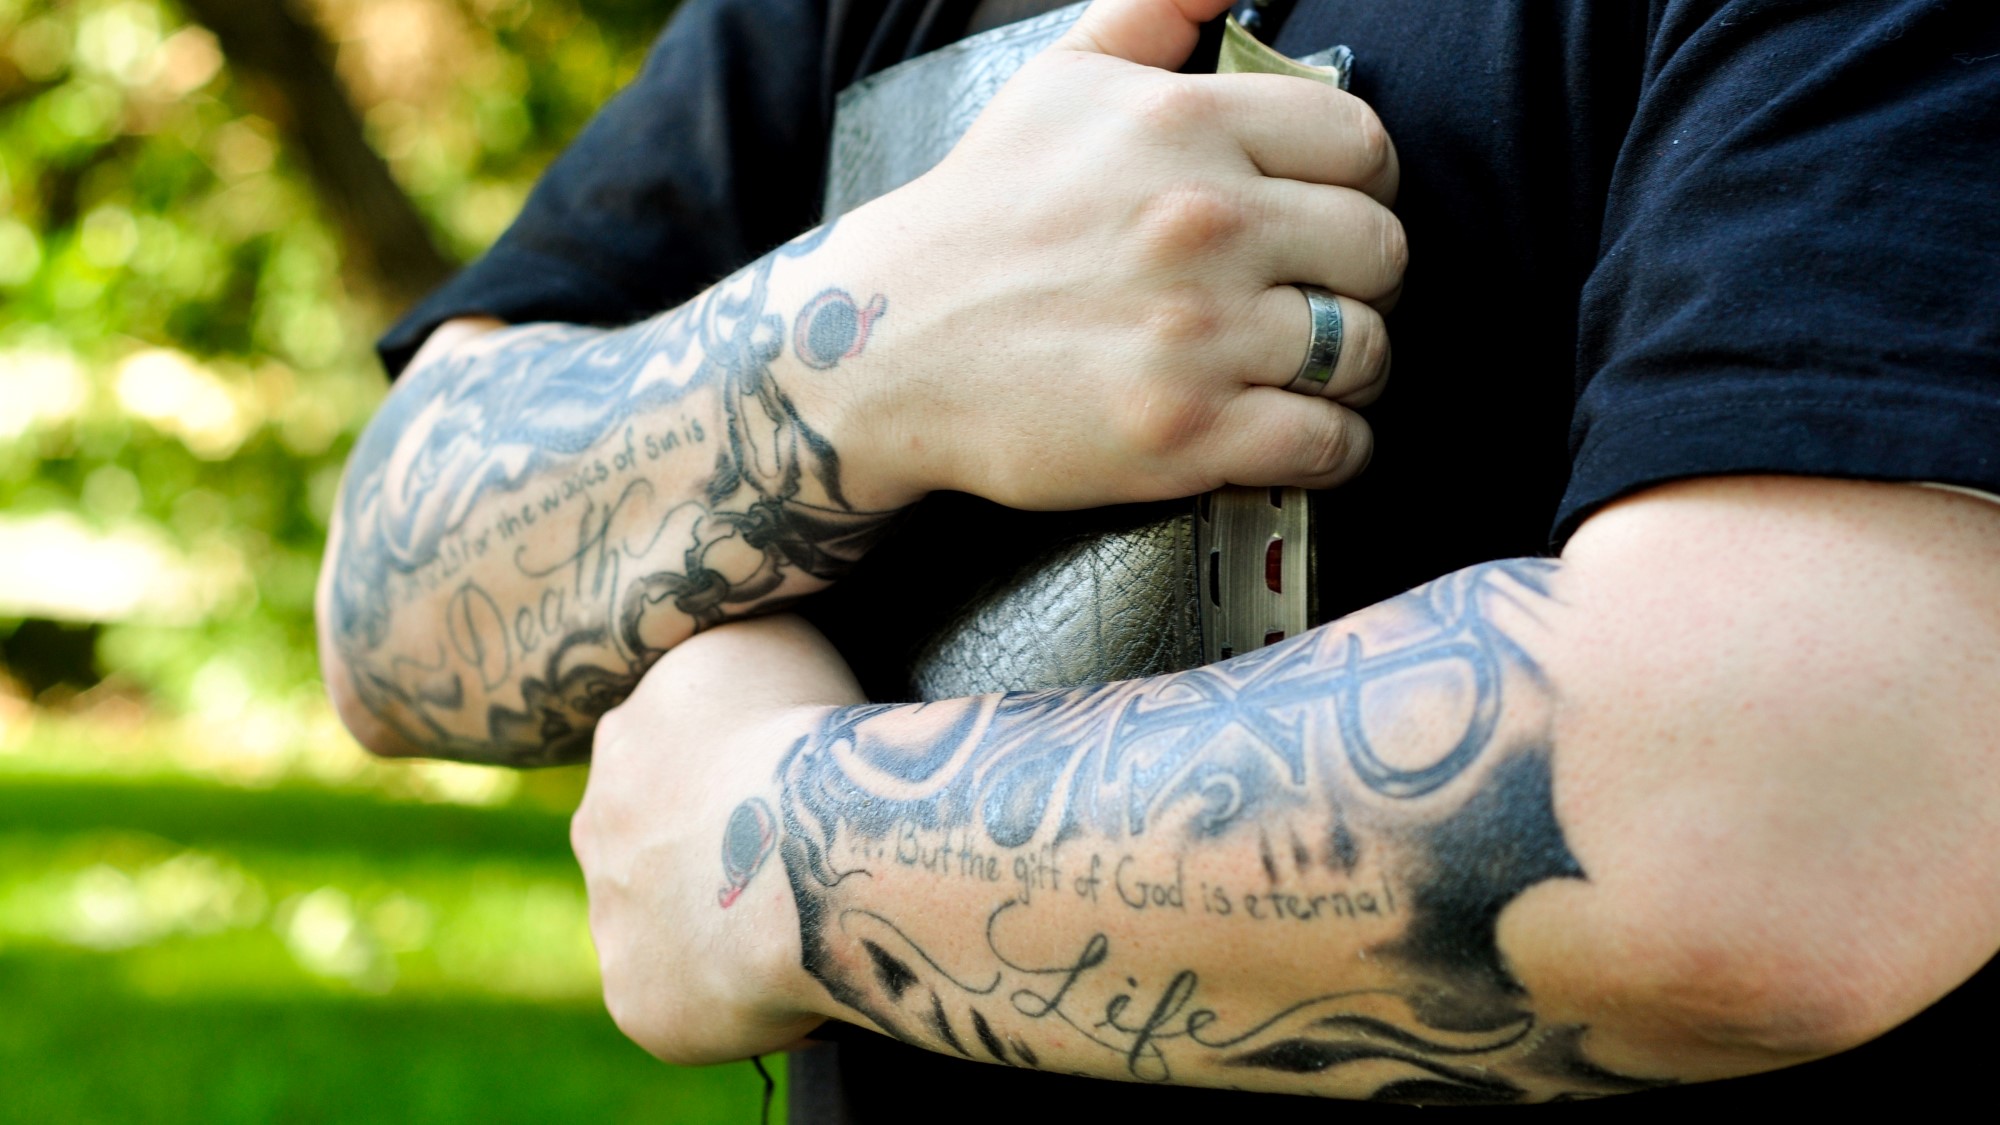 Mann med tatoveringer holder bibel tett mot brystet